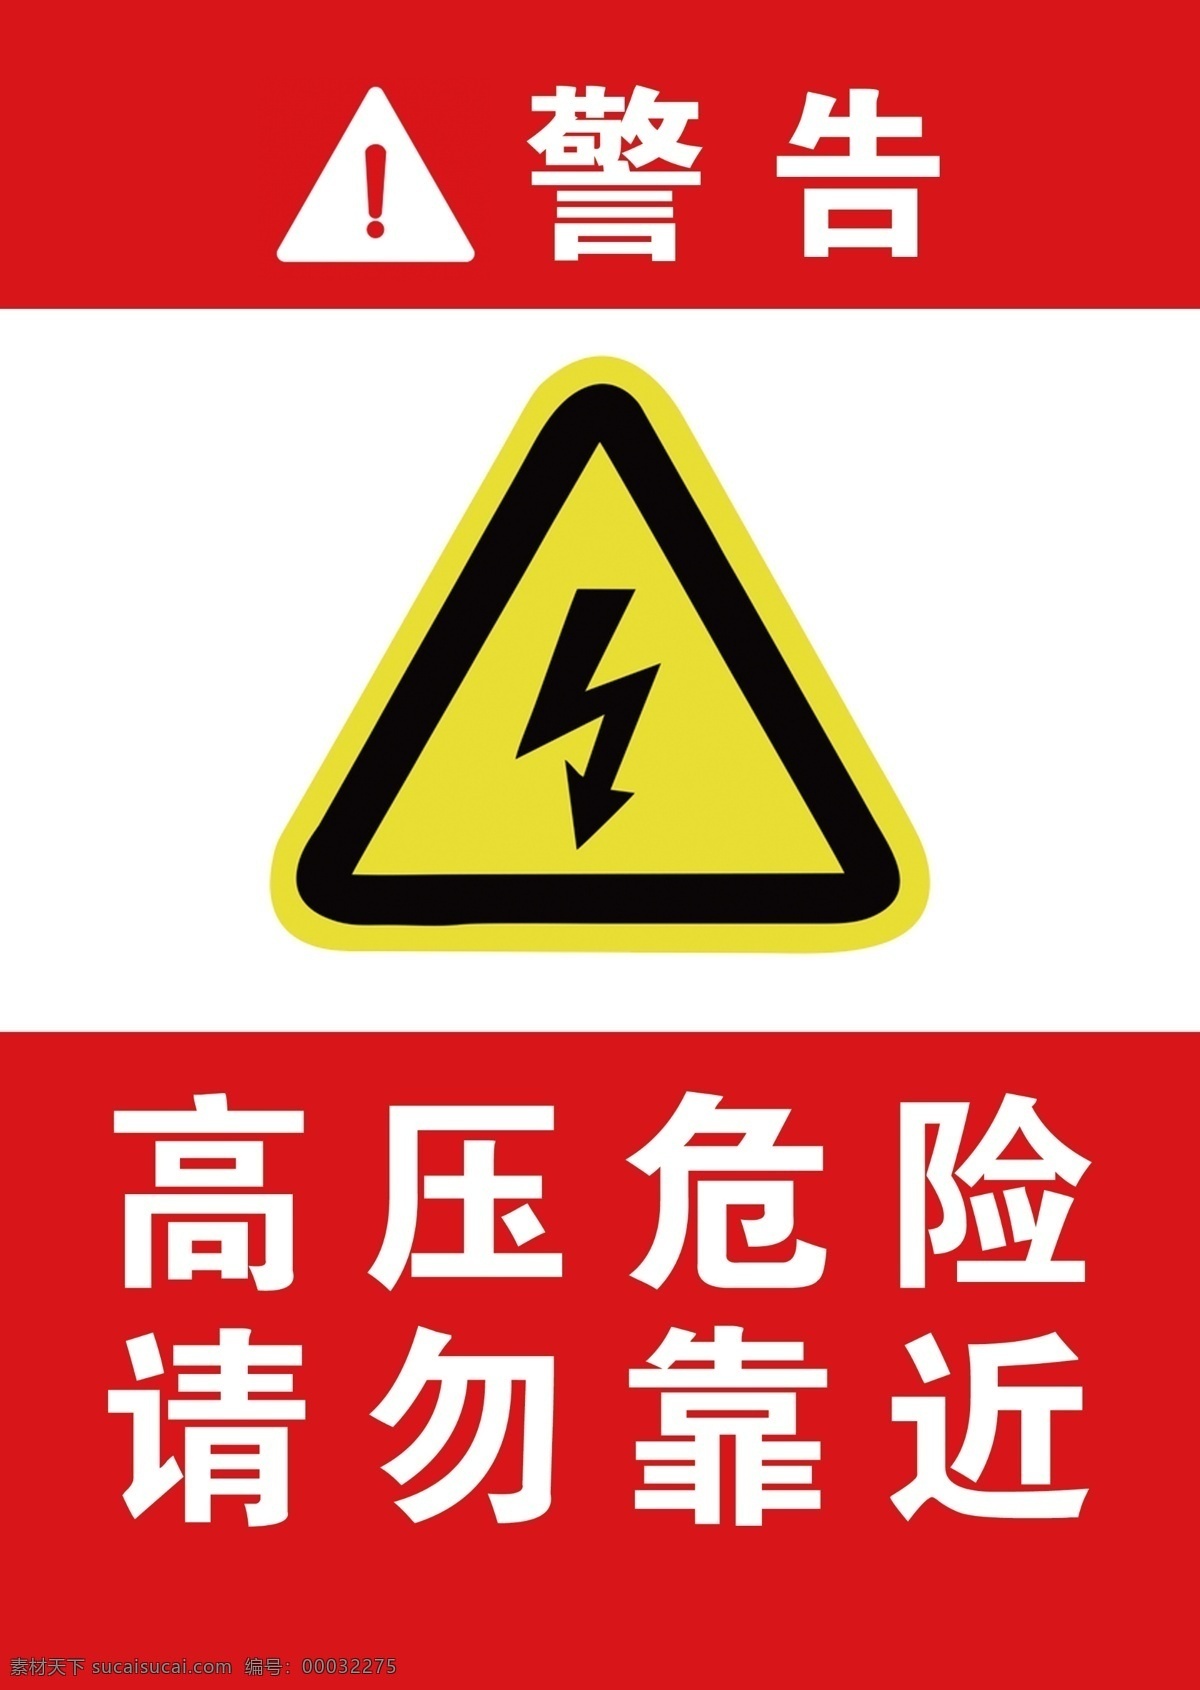 高压 危险 警示牌 高压危险 请勿靠近 有电危险 高压电 警示 注意安全 注意高压电 设计素材